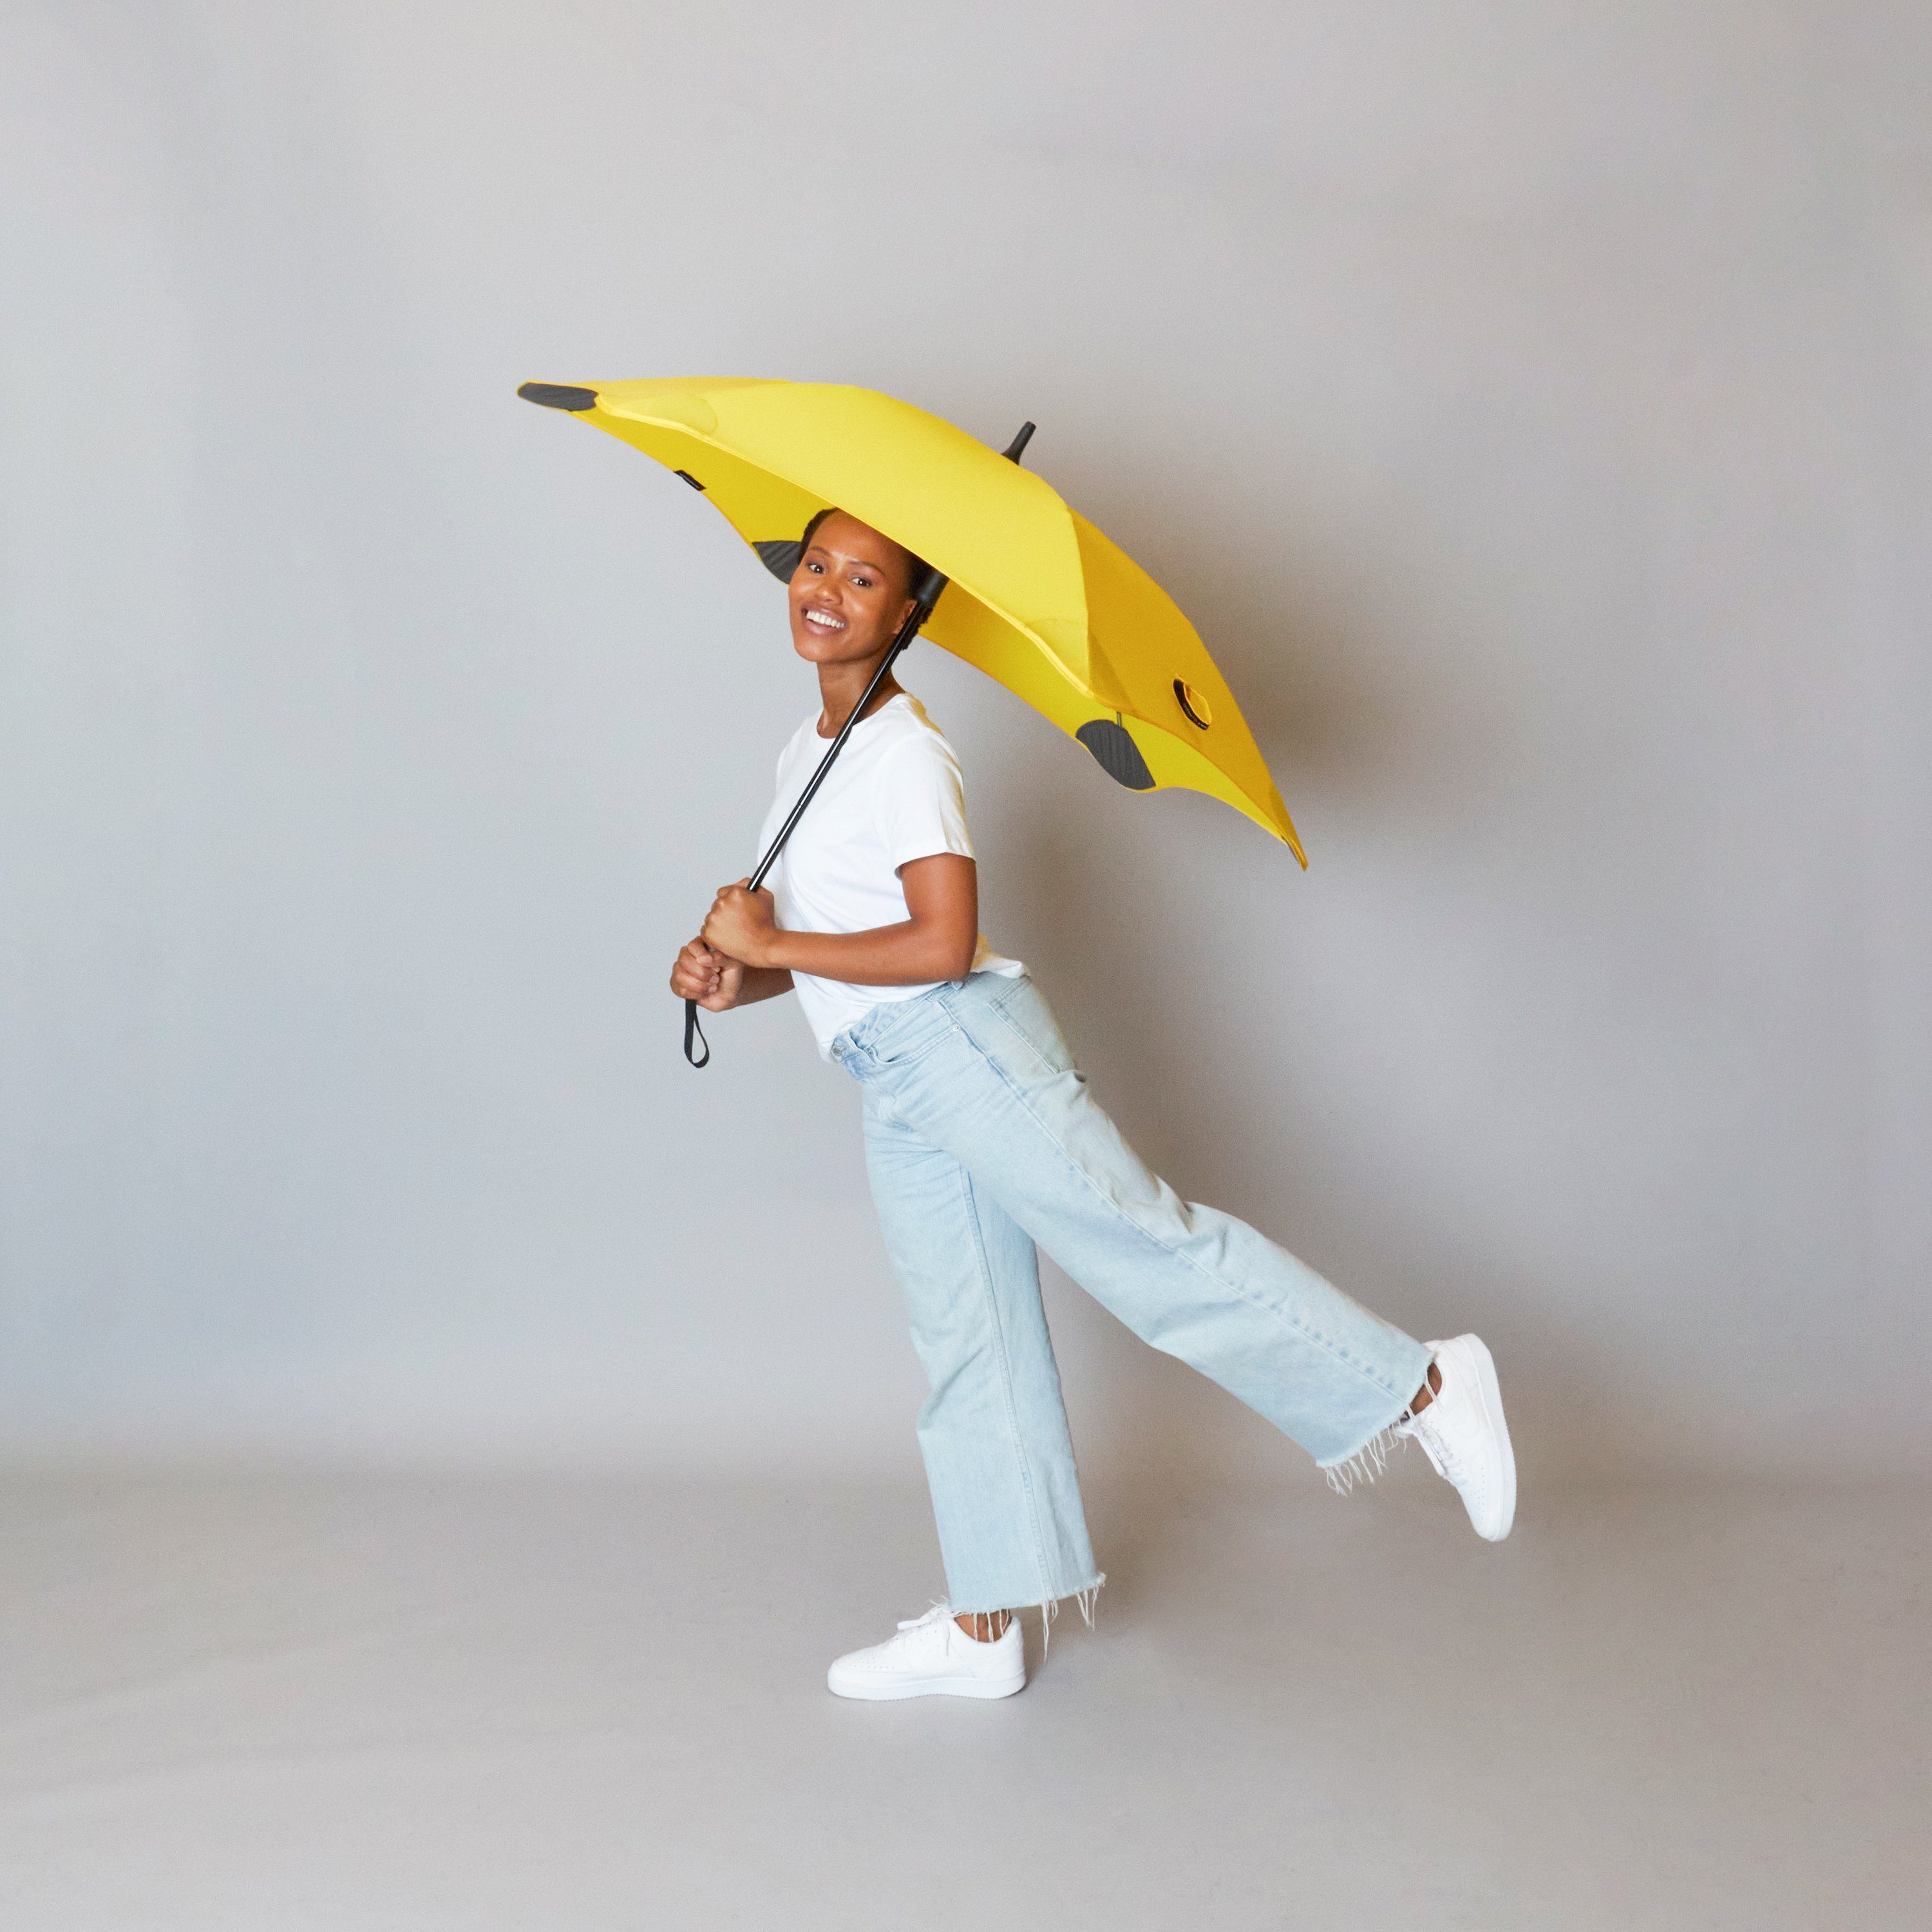 Blunt Stockregenschirm Silhouette Technologie, Classic, gelb einzigartige patentierte herausragende